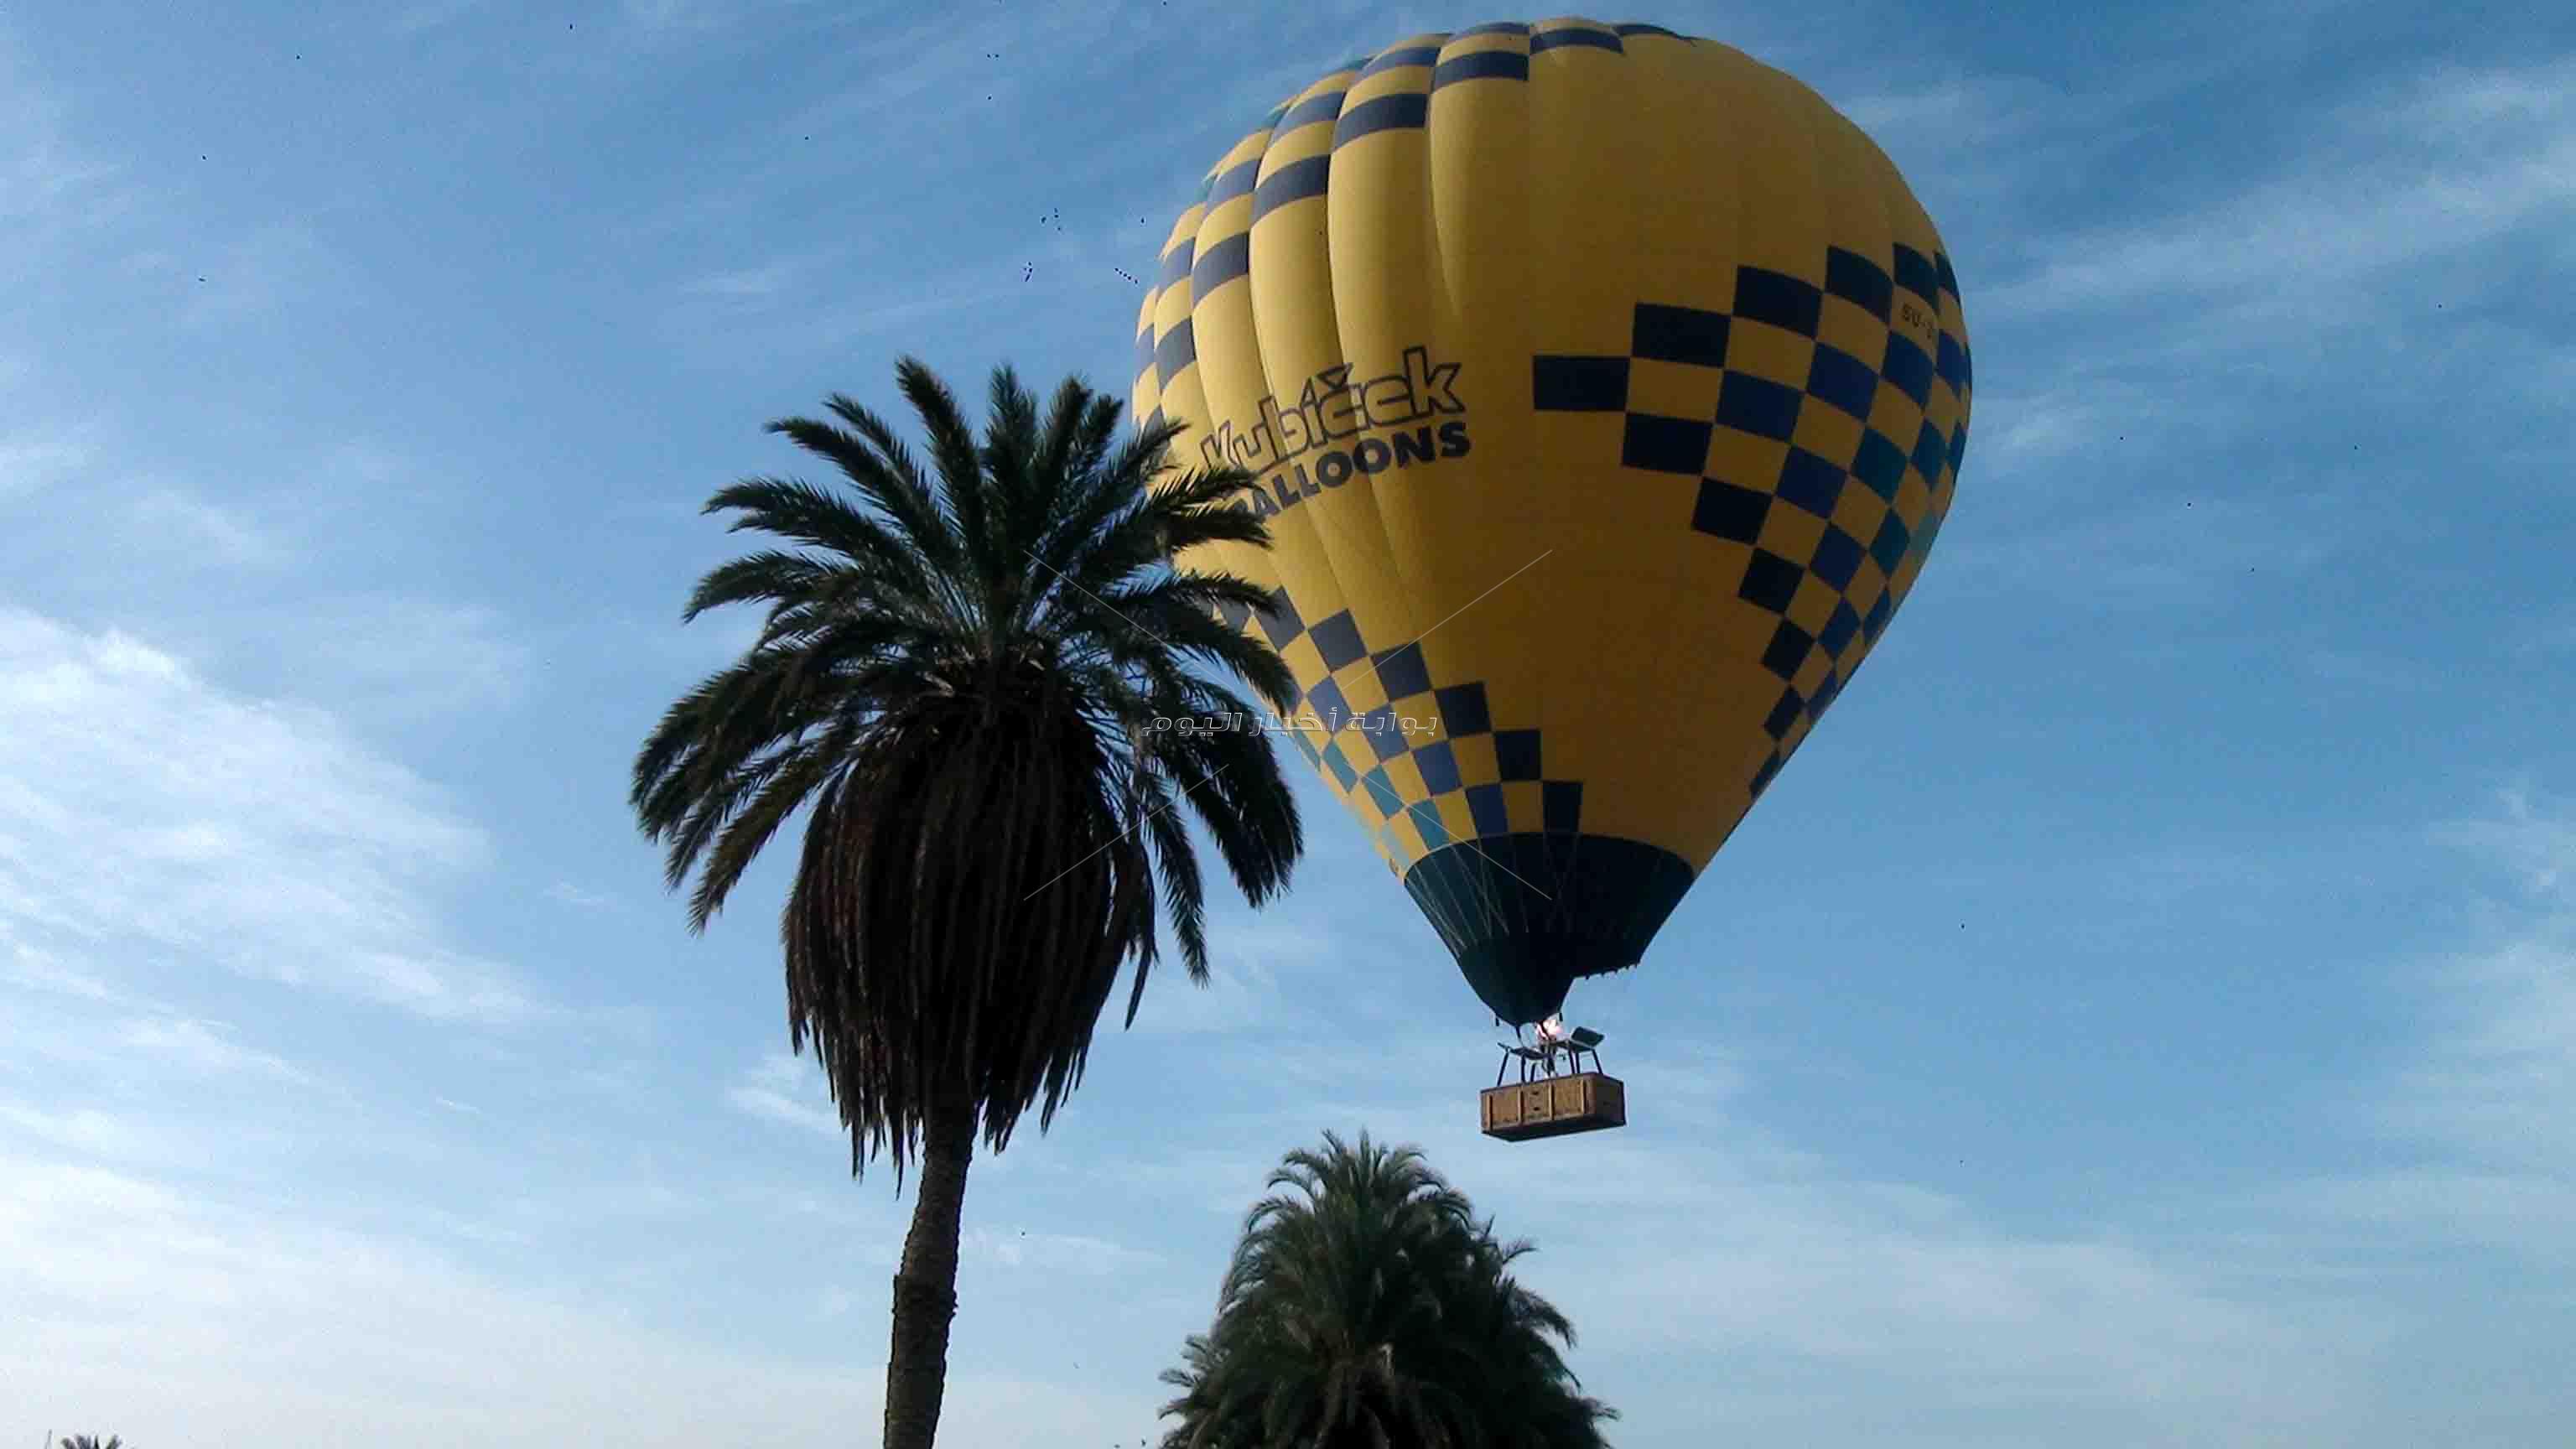   توقف حركة البالون السياحى بالأقصر يهدد أصحاب الشركات وآلاف الأسر   